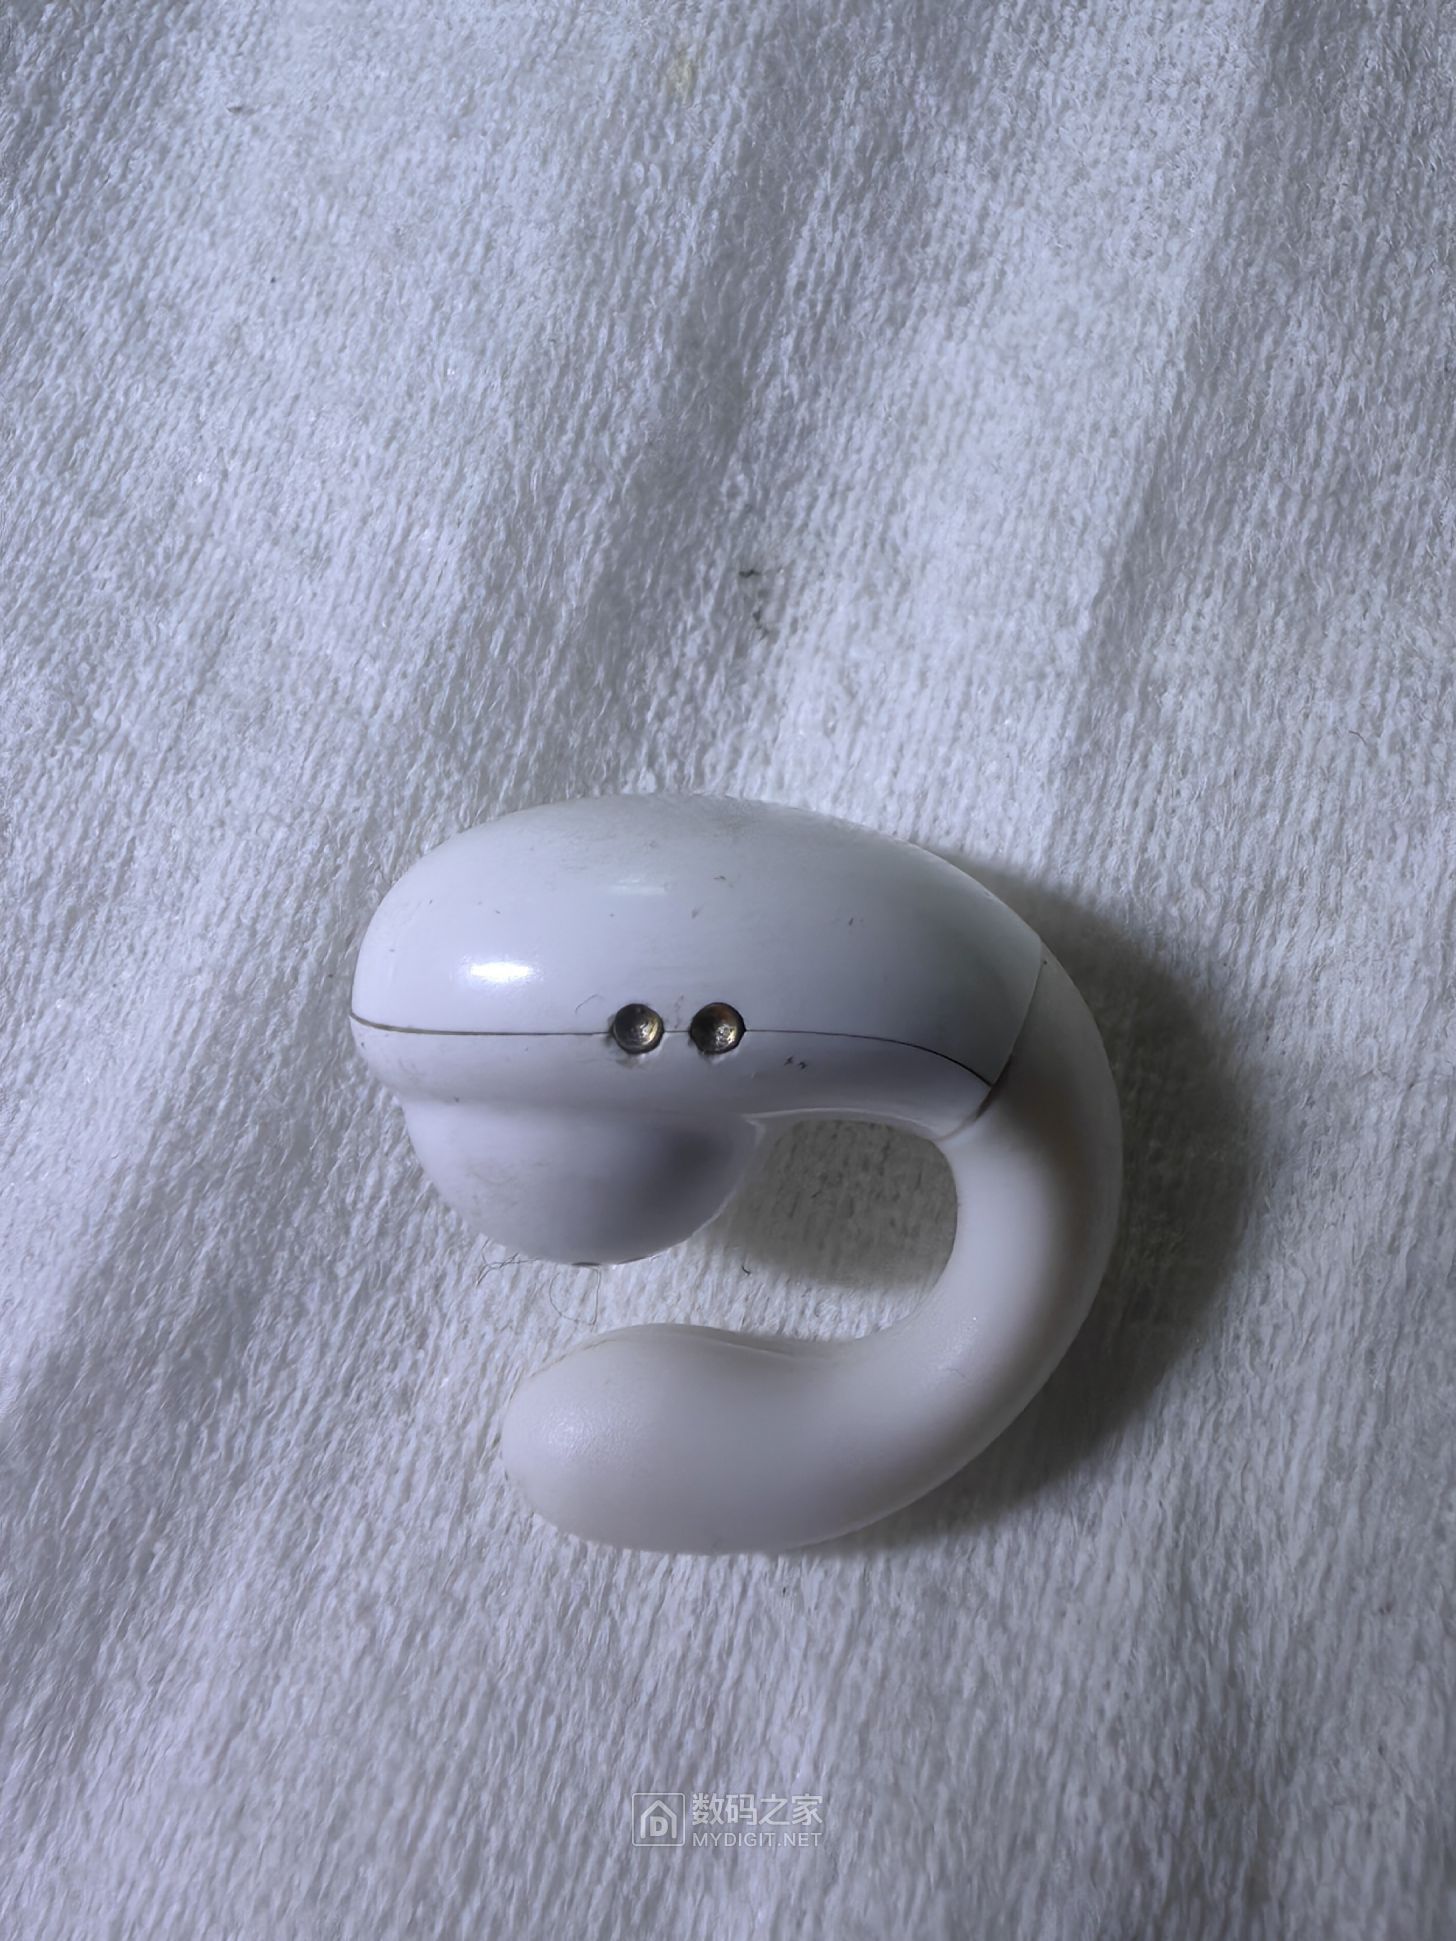 今天在酒店门口捡到的蓝牙耳机，还能与手机蓝牙连接，音效不错。